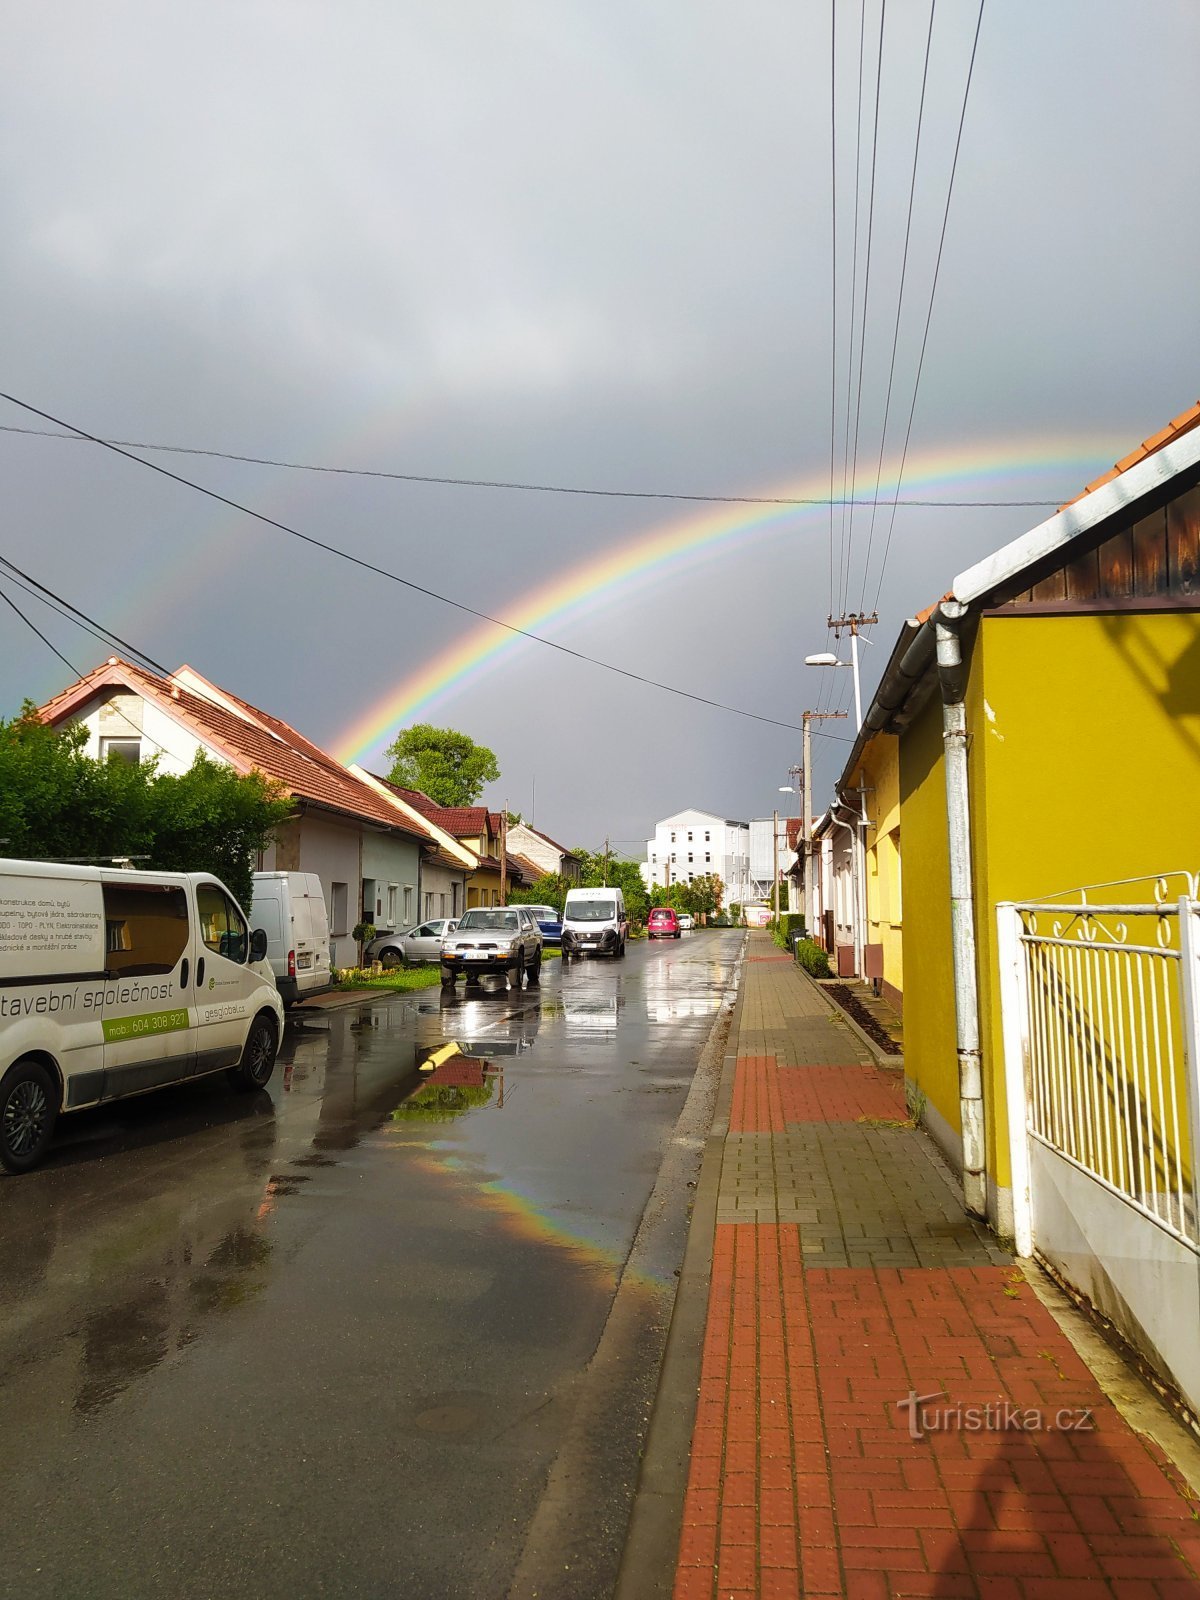 De regenboog boven de treinhalte Malenovice - centrum